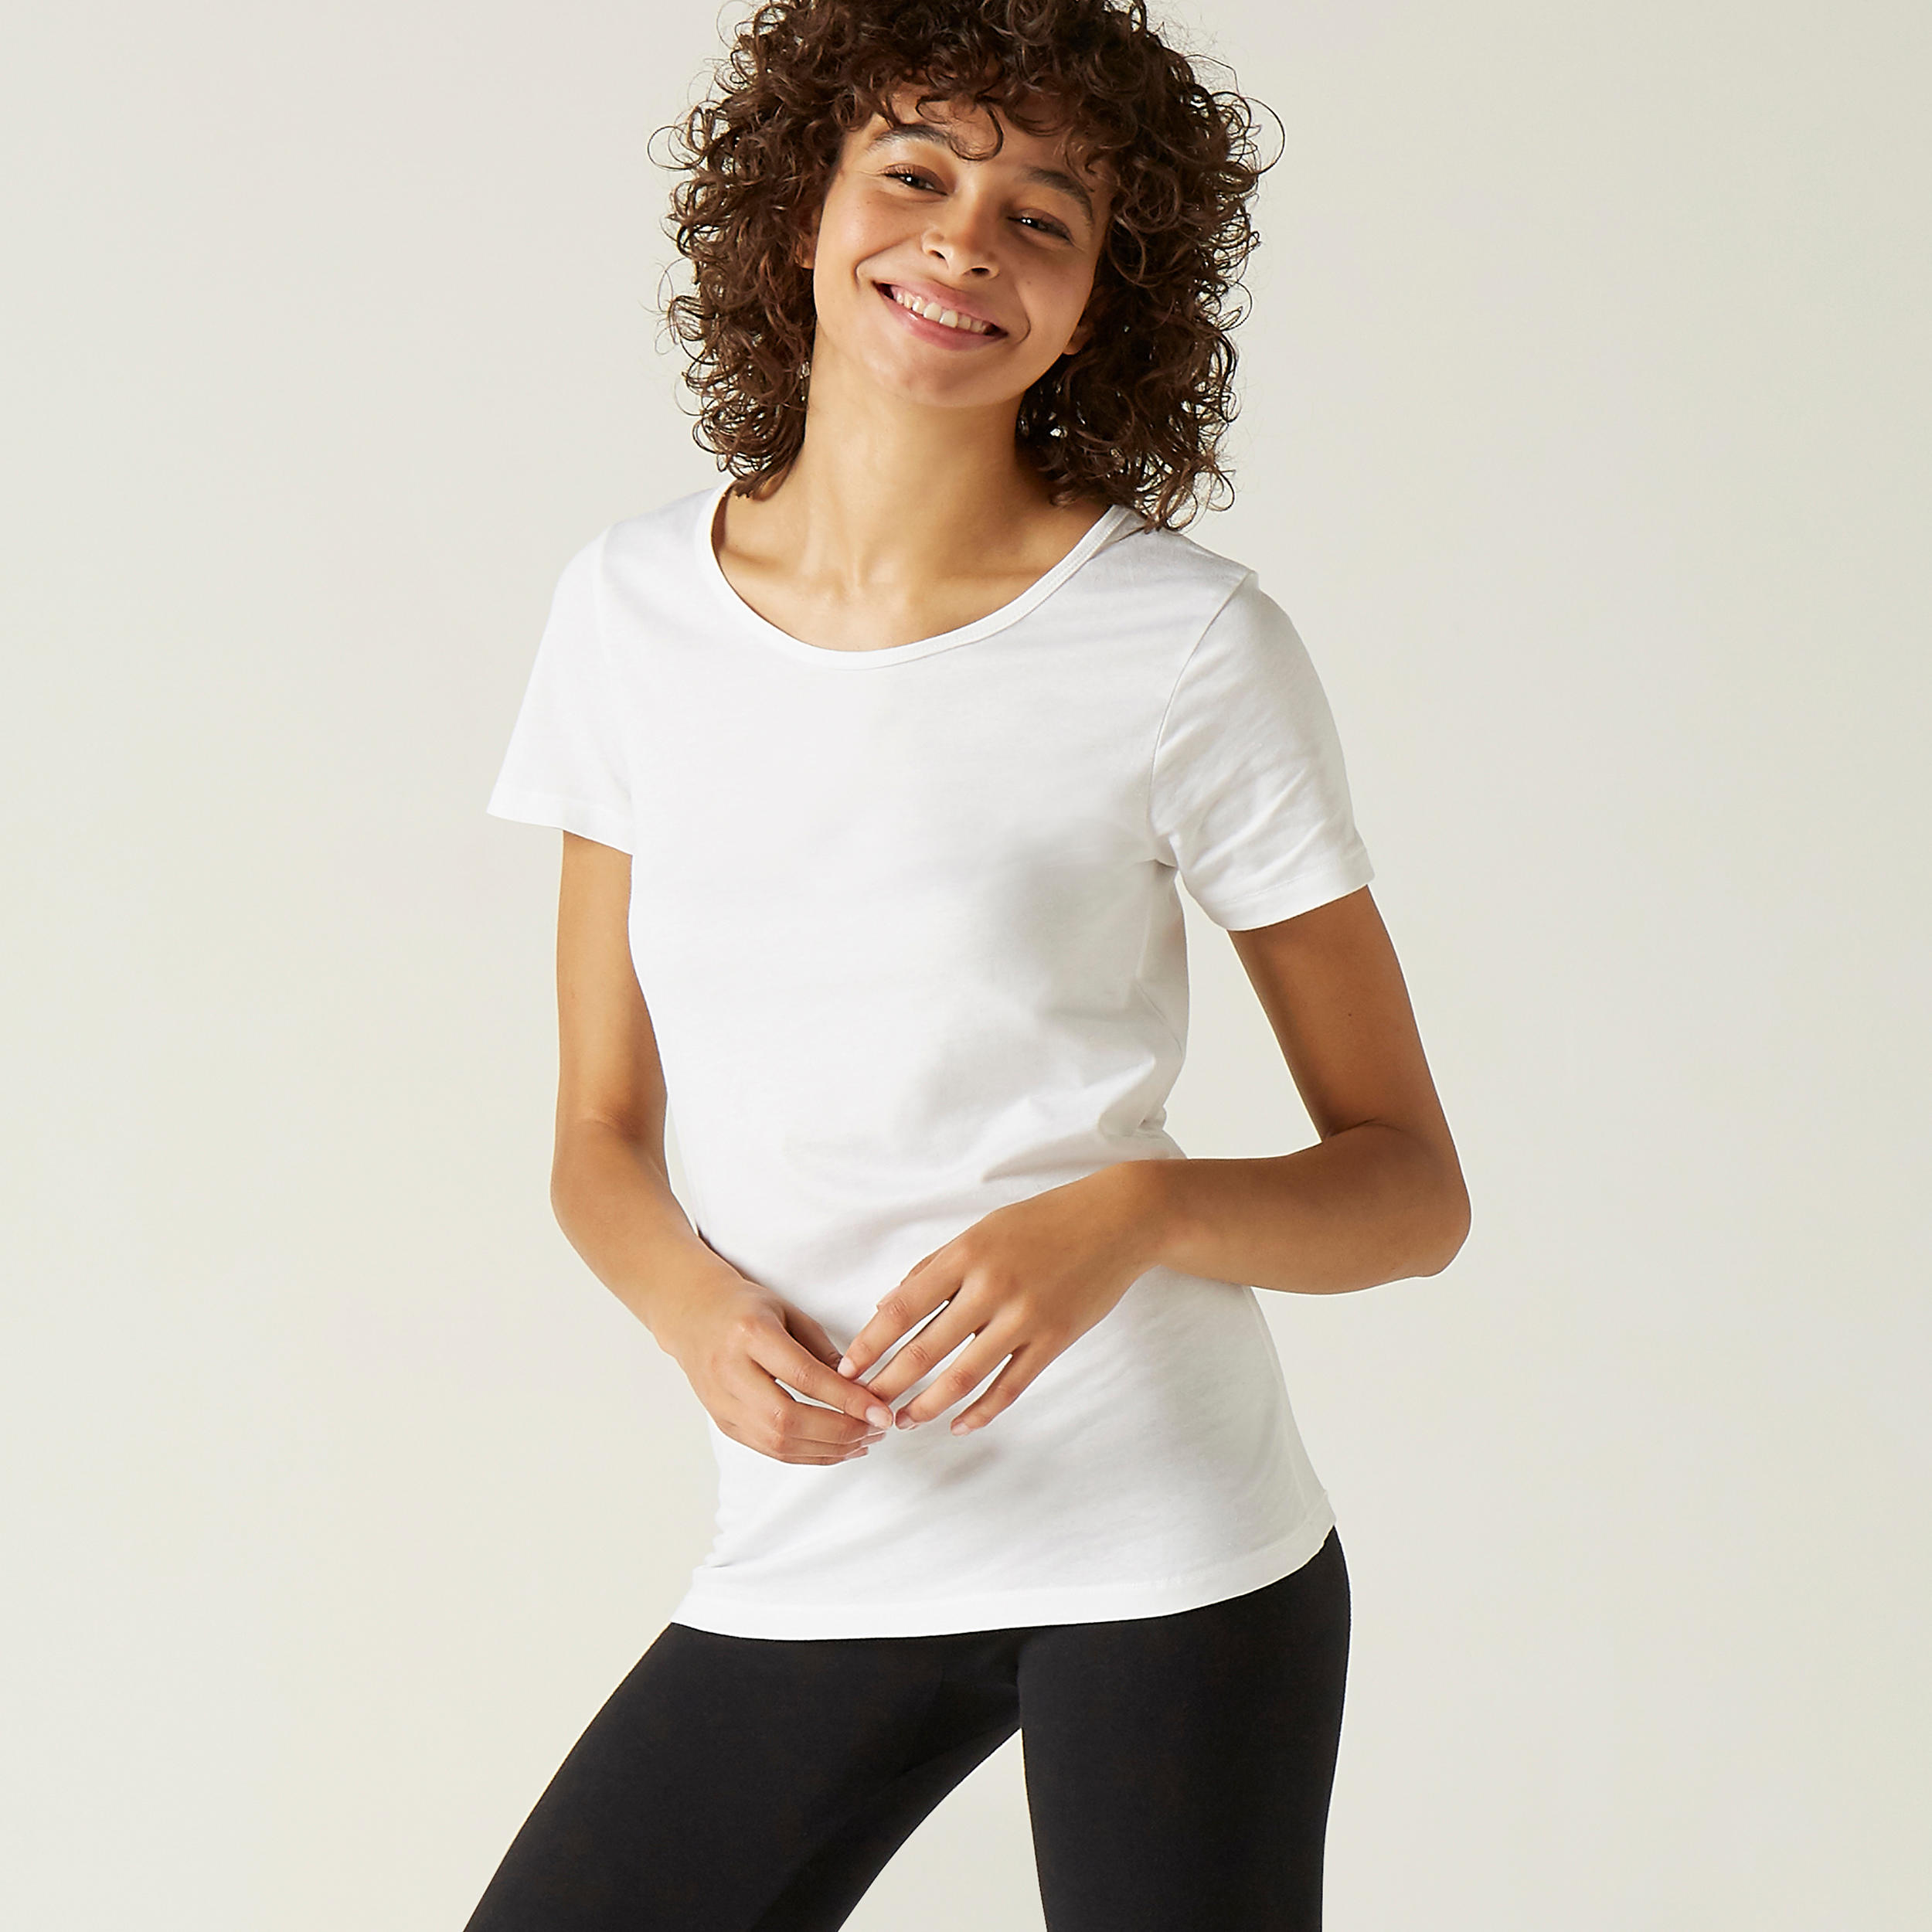 Women’s Fitness T-Shirt - 100 White - DOMYOS